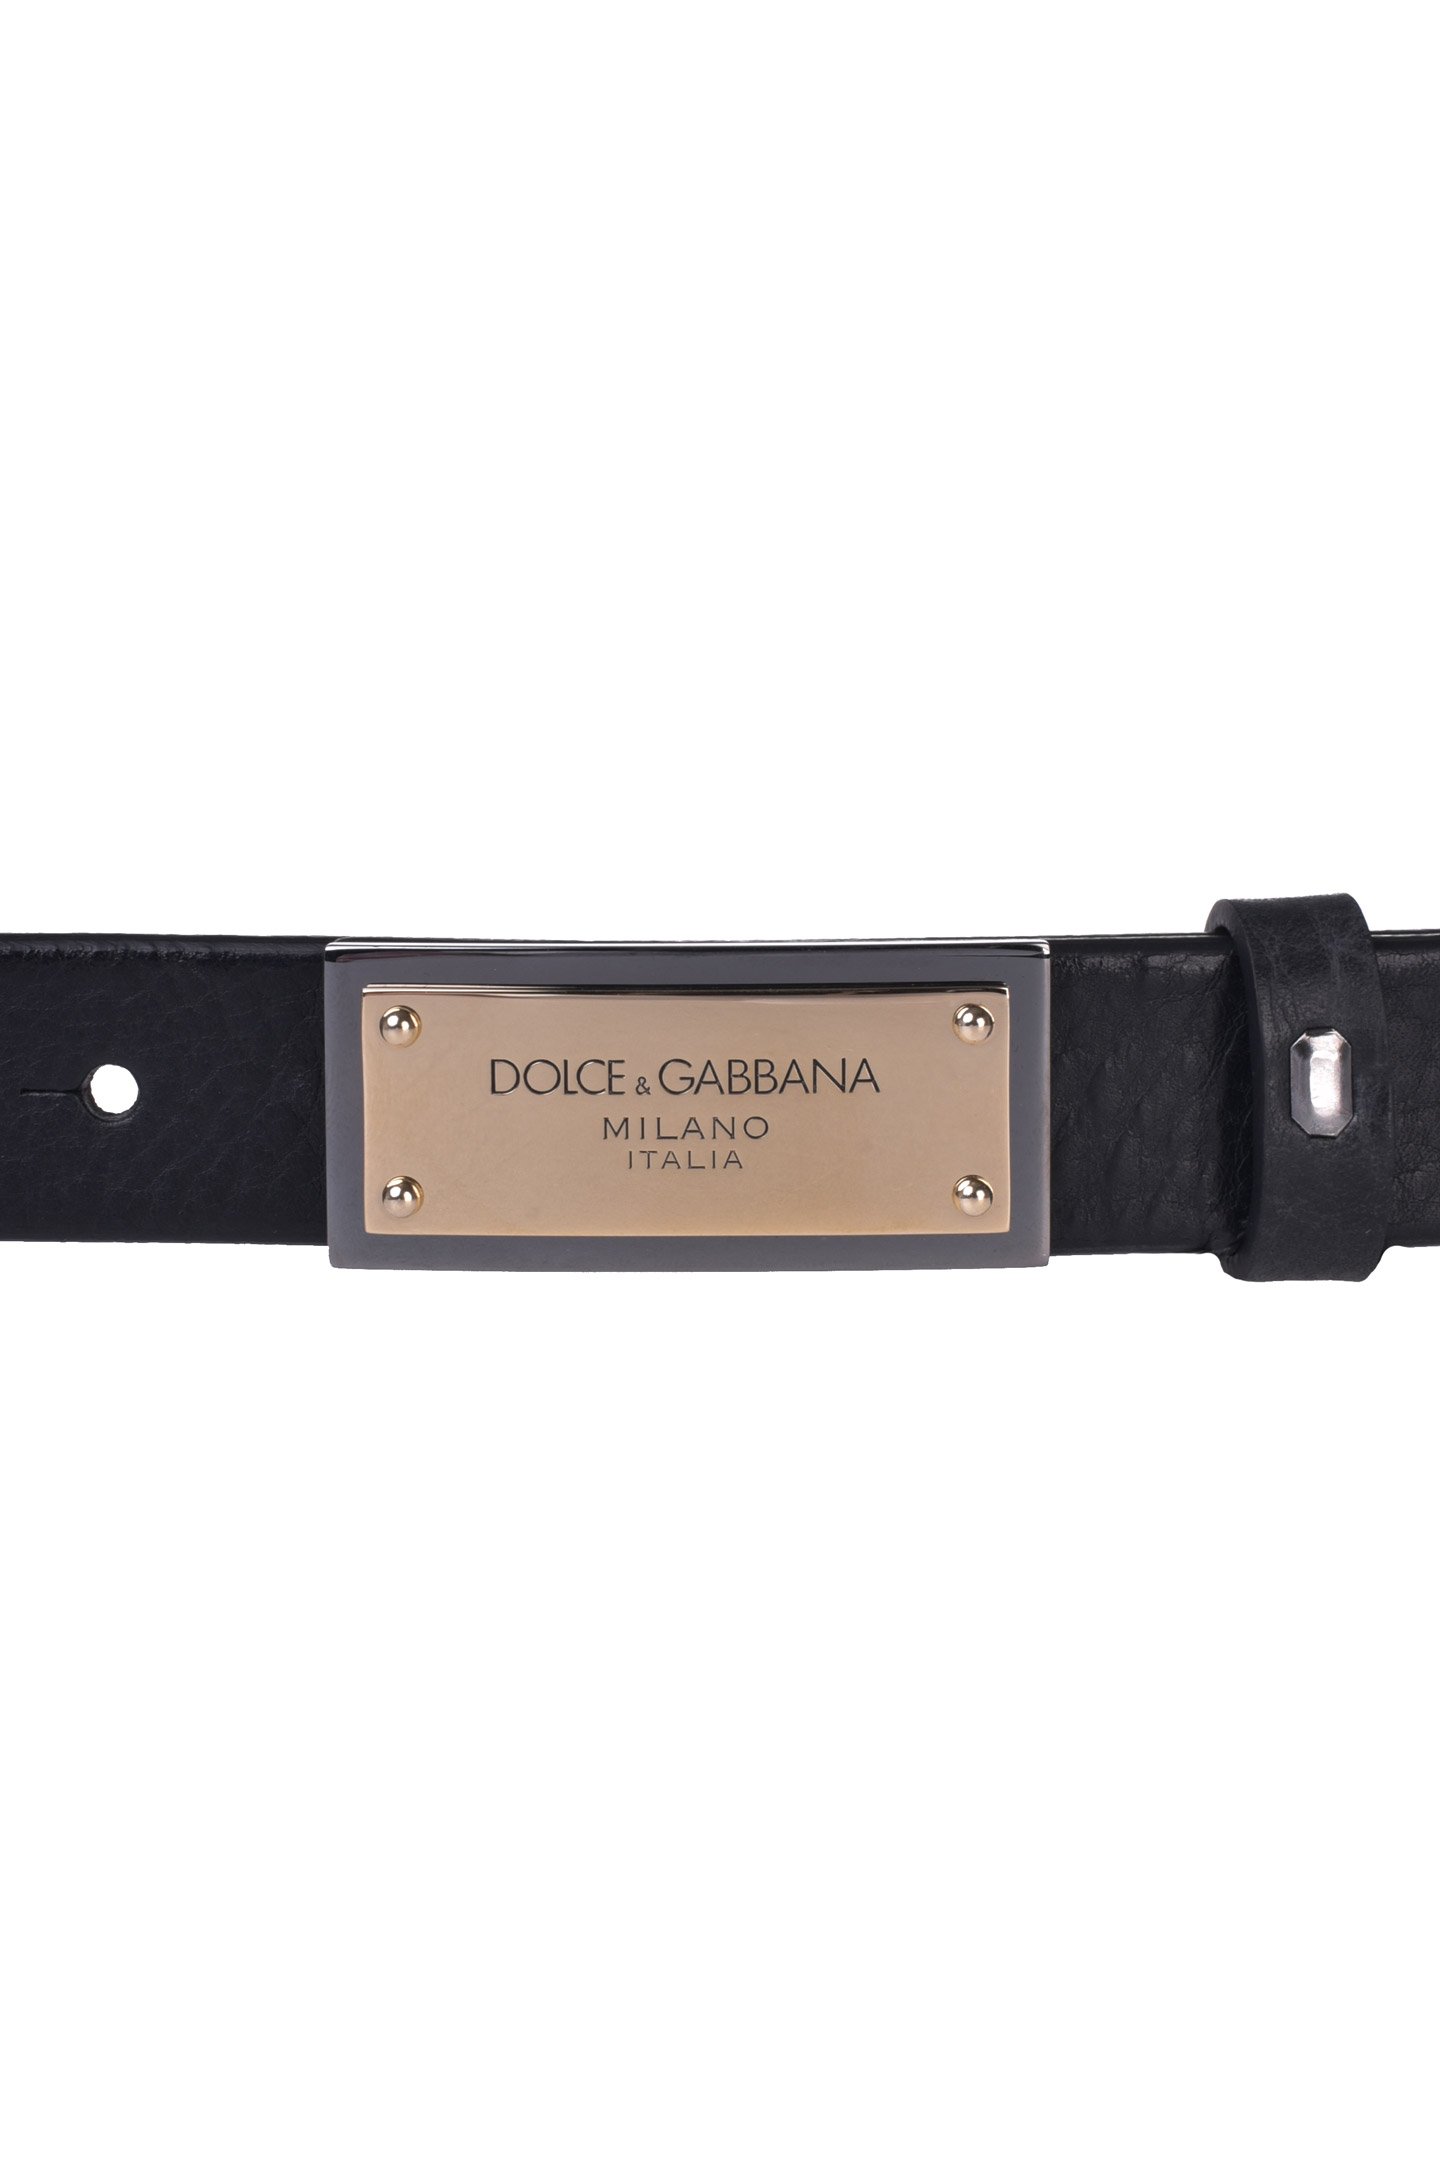 Ремень DOLCE & GABBANA BC4591 AV480, цвет: Черный, Мужской